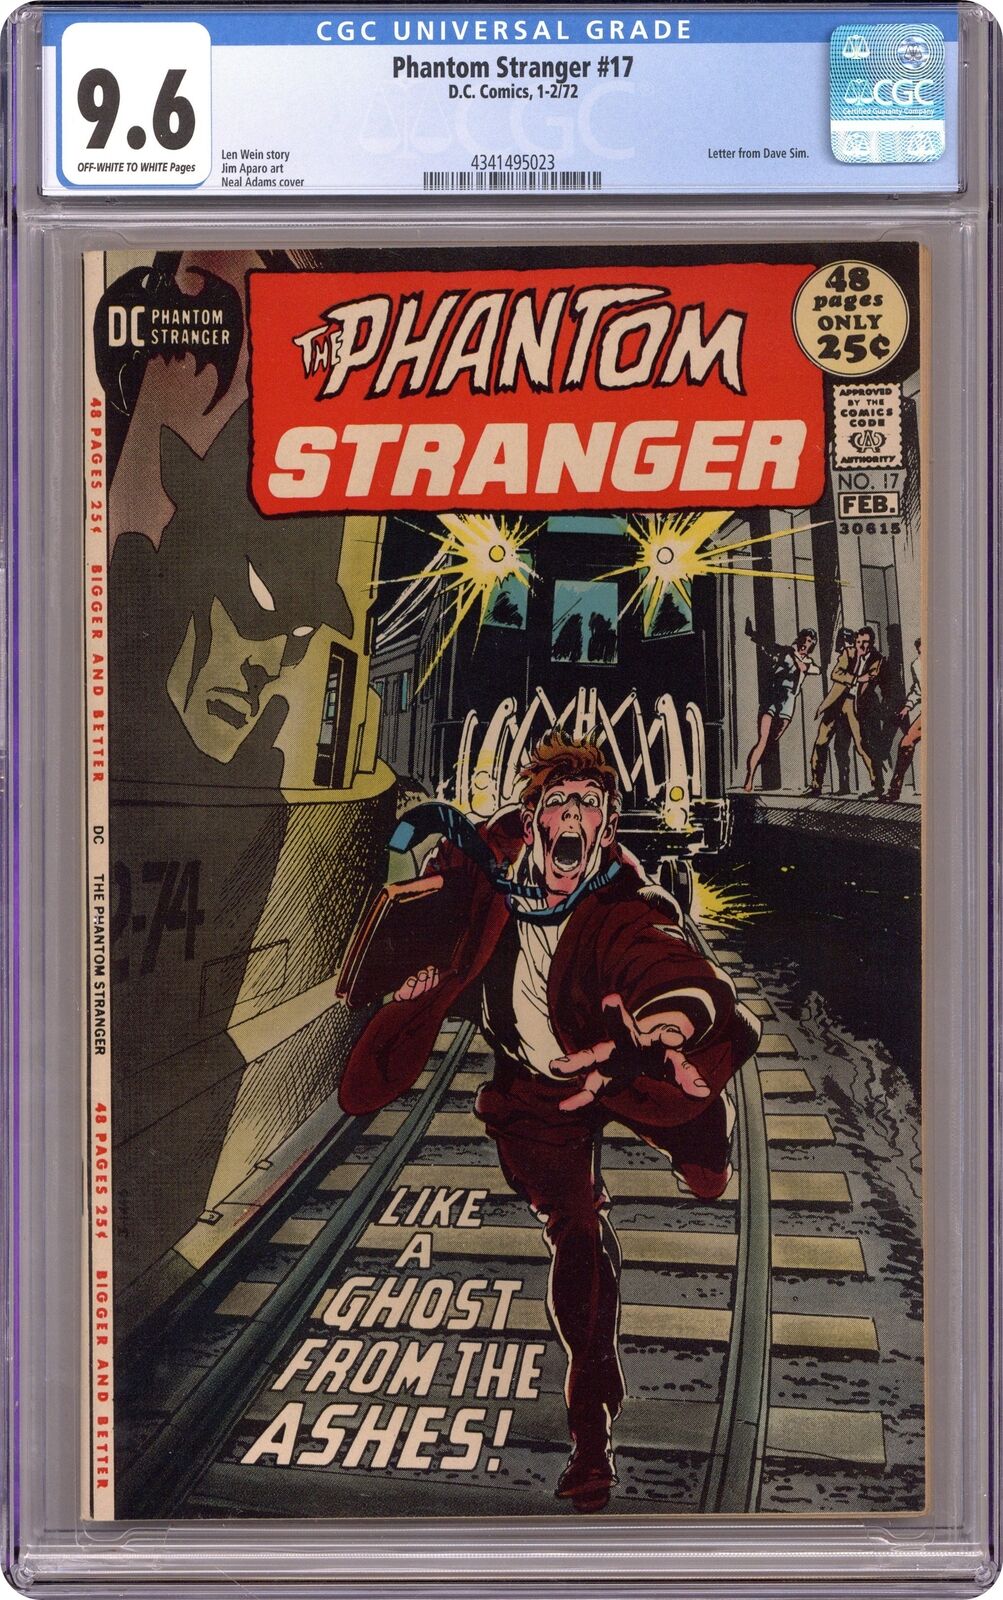 Phantom Stranger #17 CGC 9.6 1972 4341495023